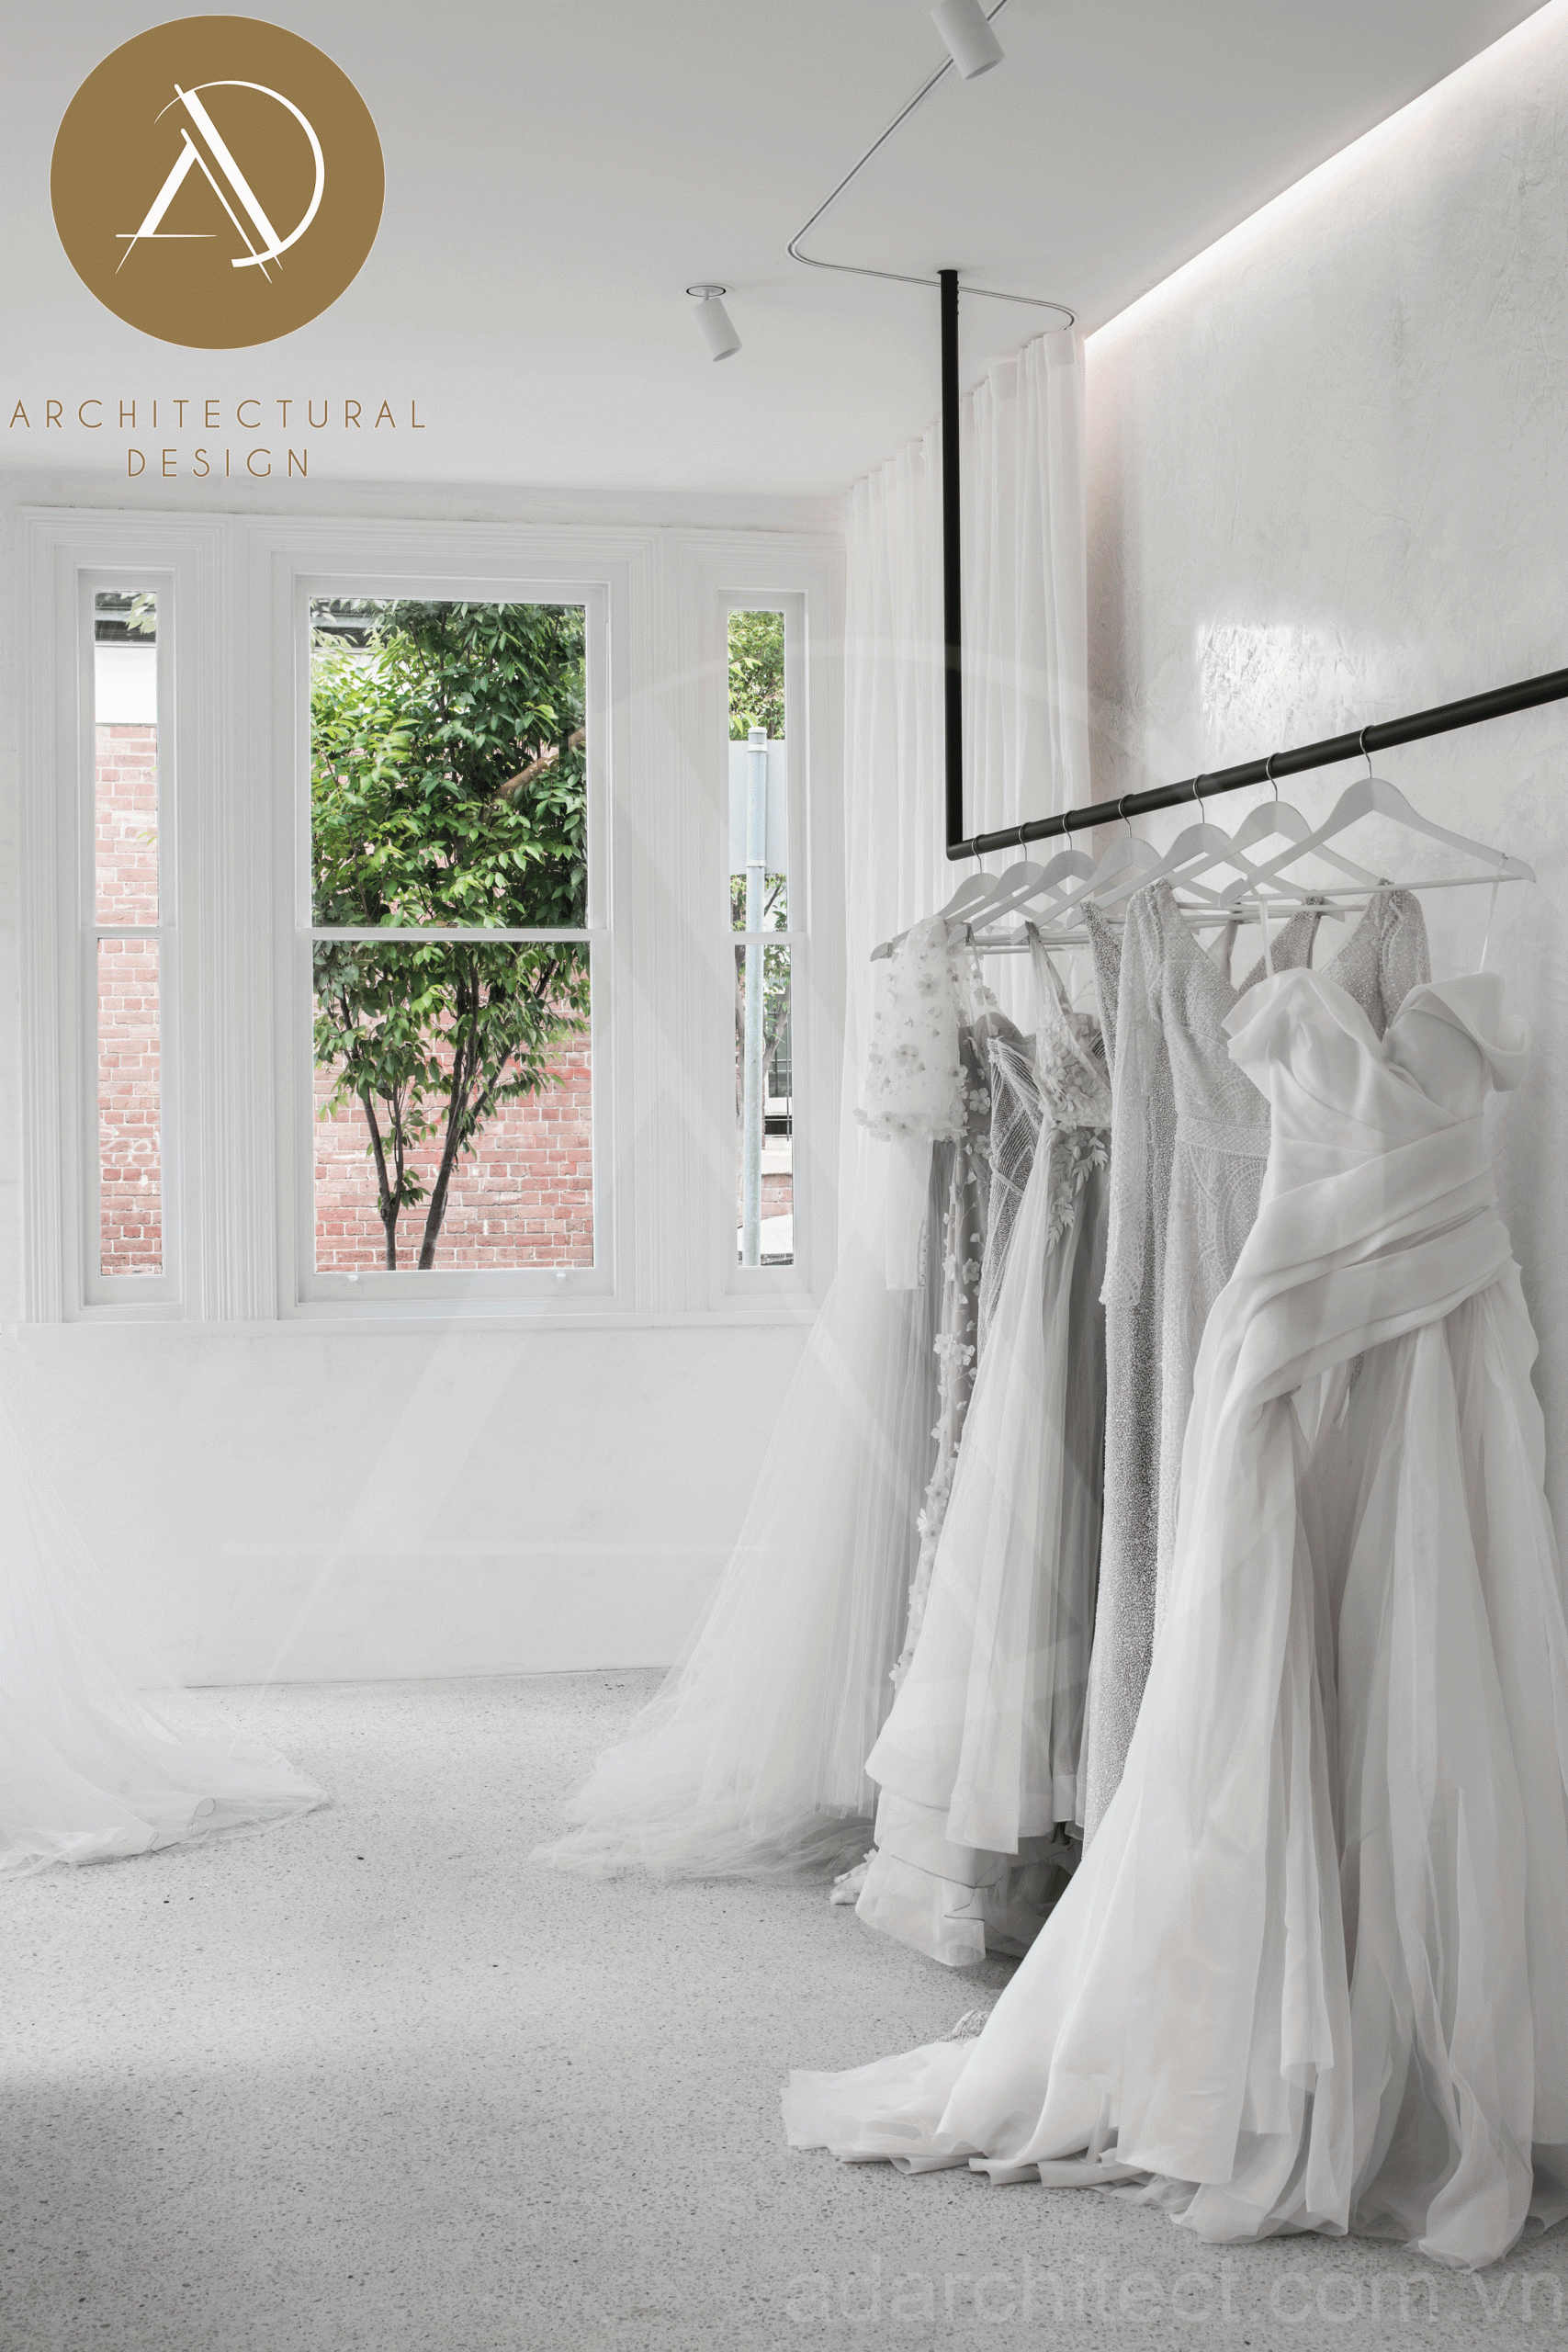 thiết kế tiệm áo cưới đẹp: cửa sổ đẹp màu trắng tinh tế cho không gian thêm trang nhã